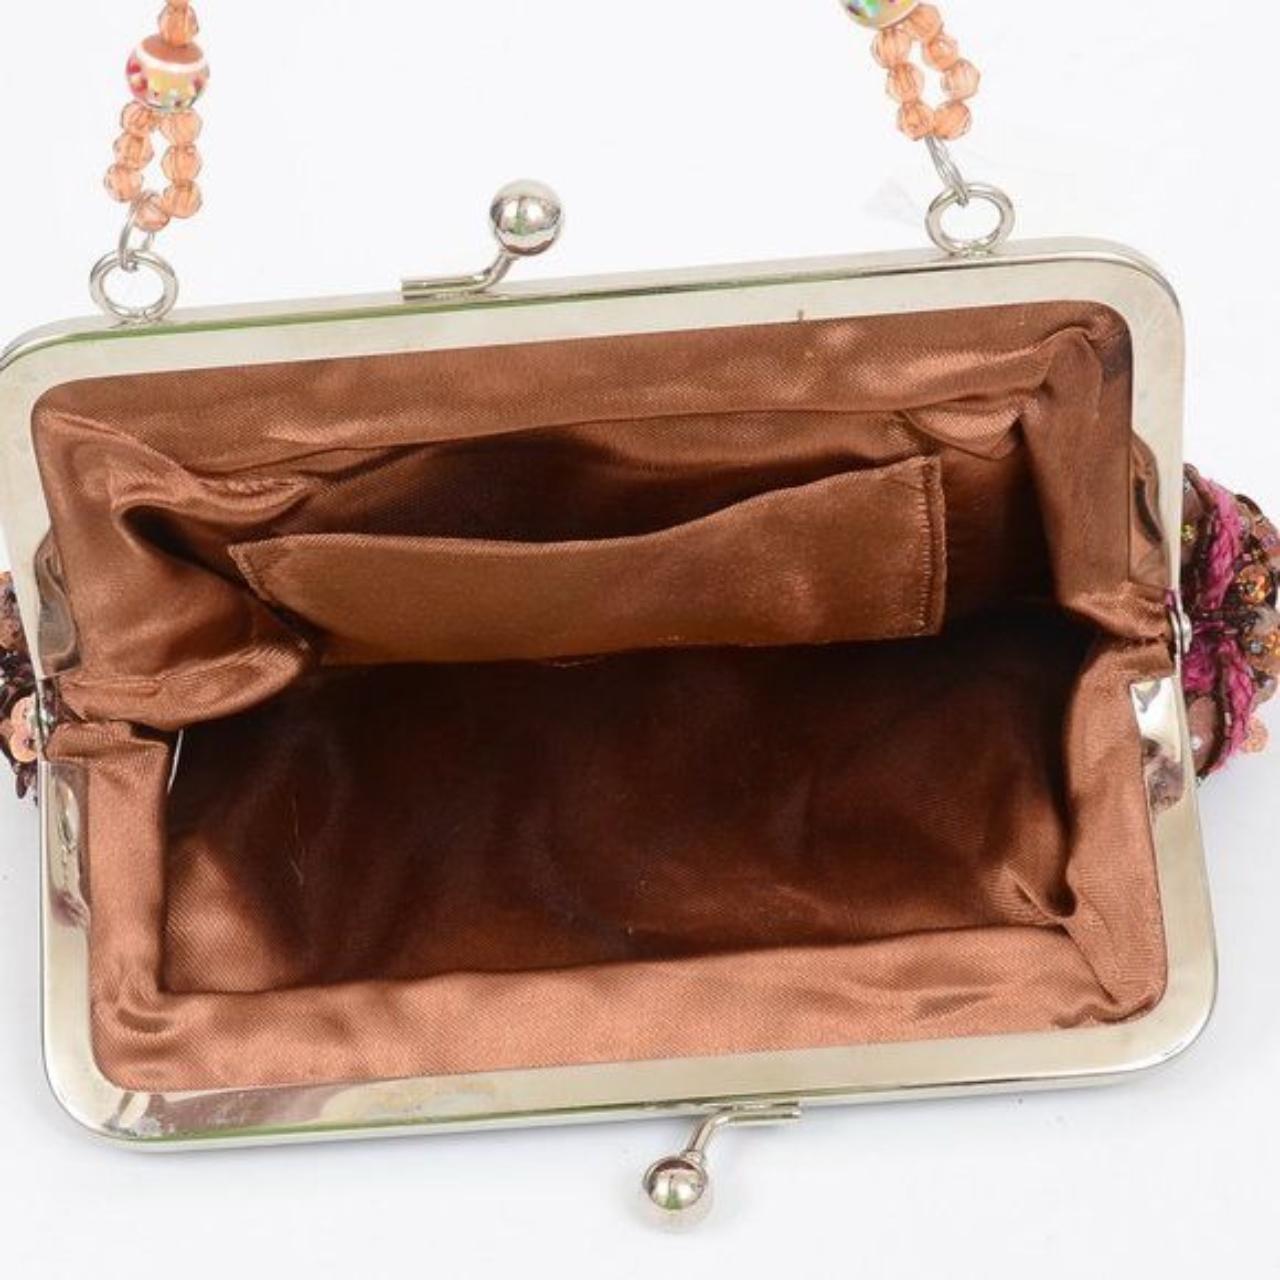 Vintage black purse with metal handle Super cute - Depop